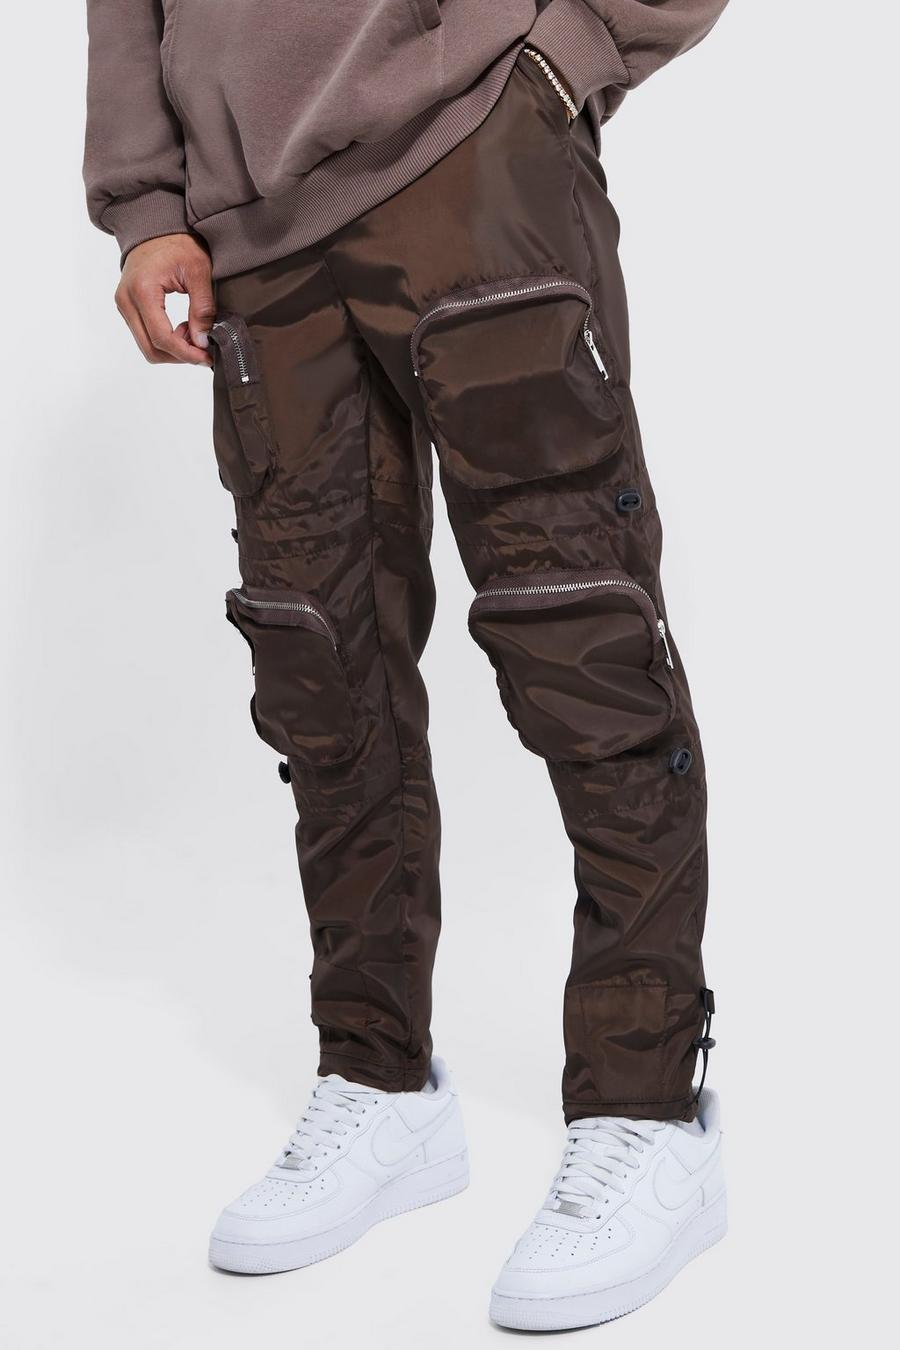 Pantalón estrecho con hebilla, multibolsillos cargo y cintura elástica, Chocolate image number 1